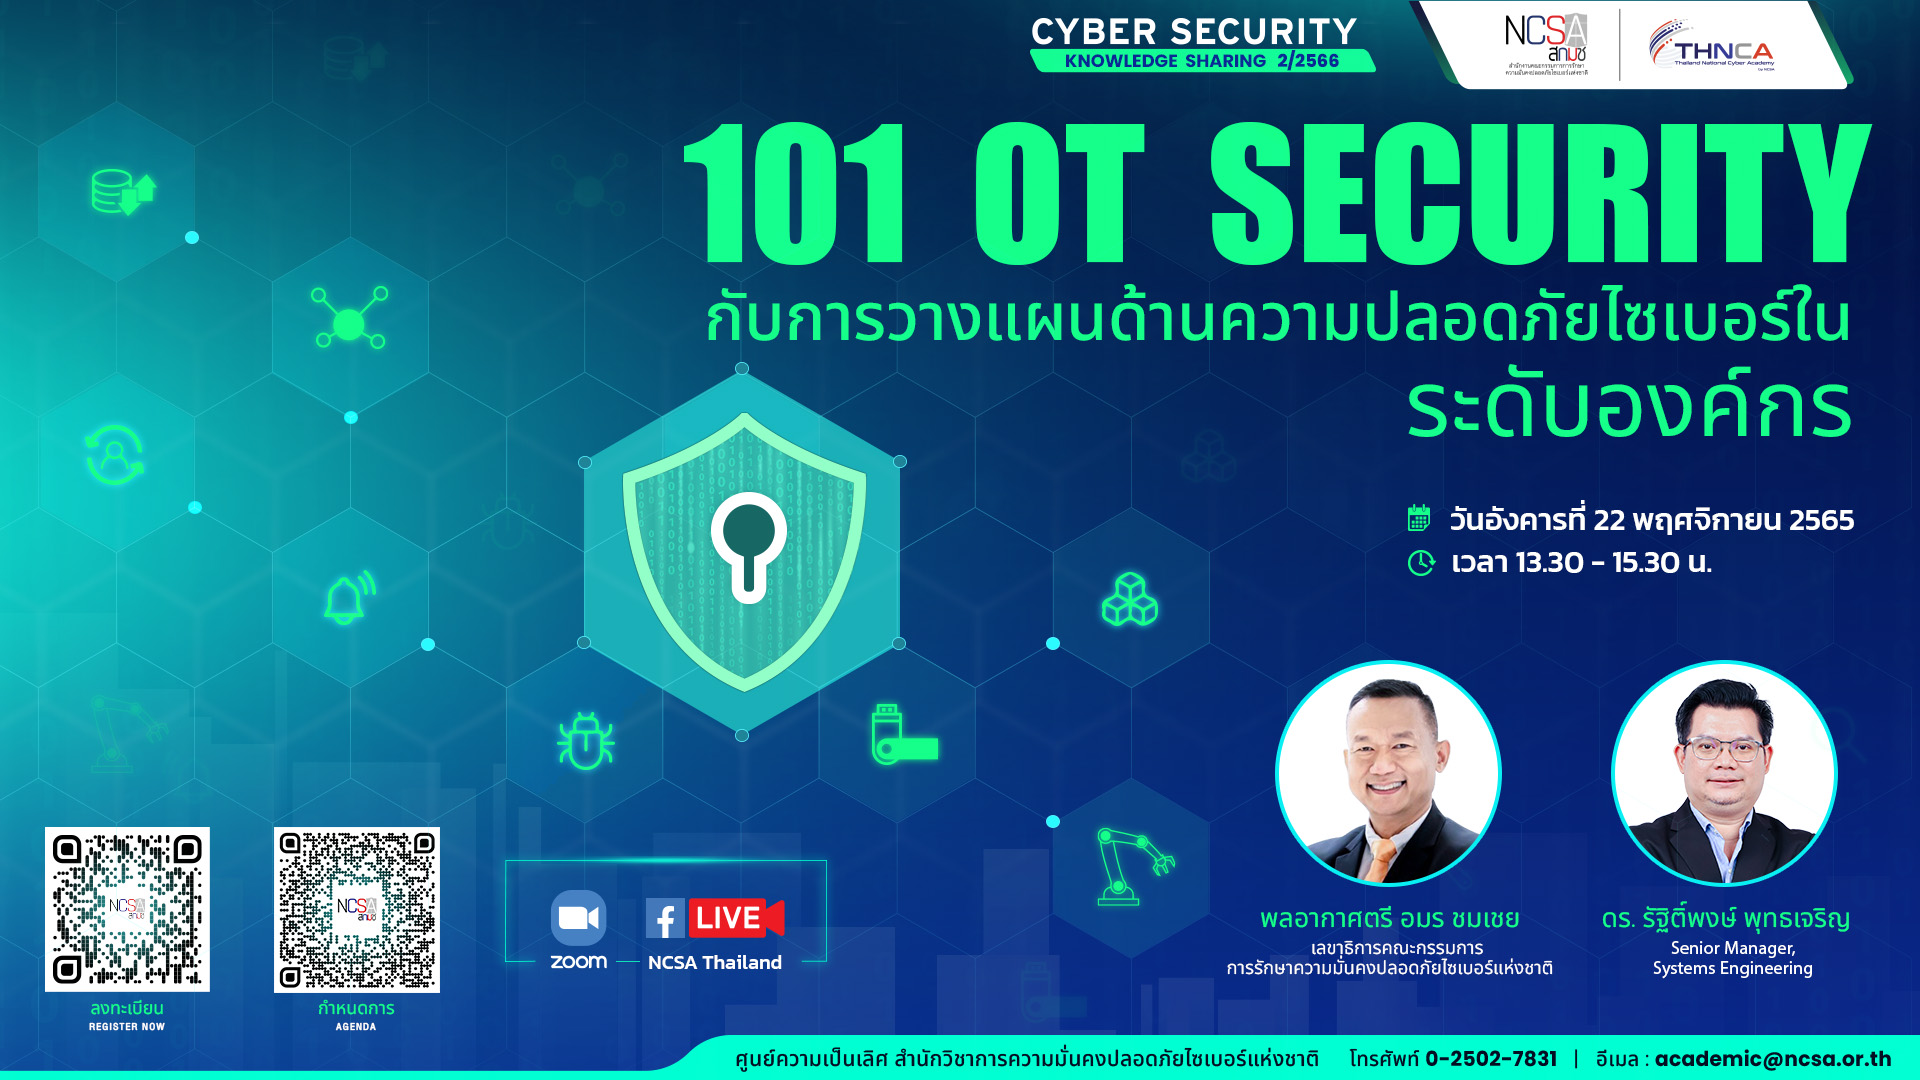 101 OT Security กับการวางแผนด้านความปลอดภัยไซเบอร์ในระดับองค์กร